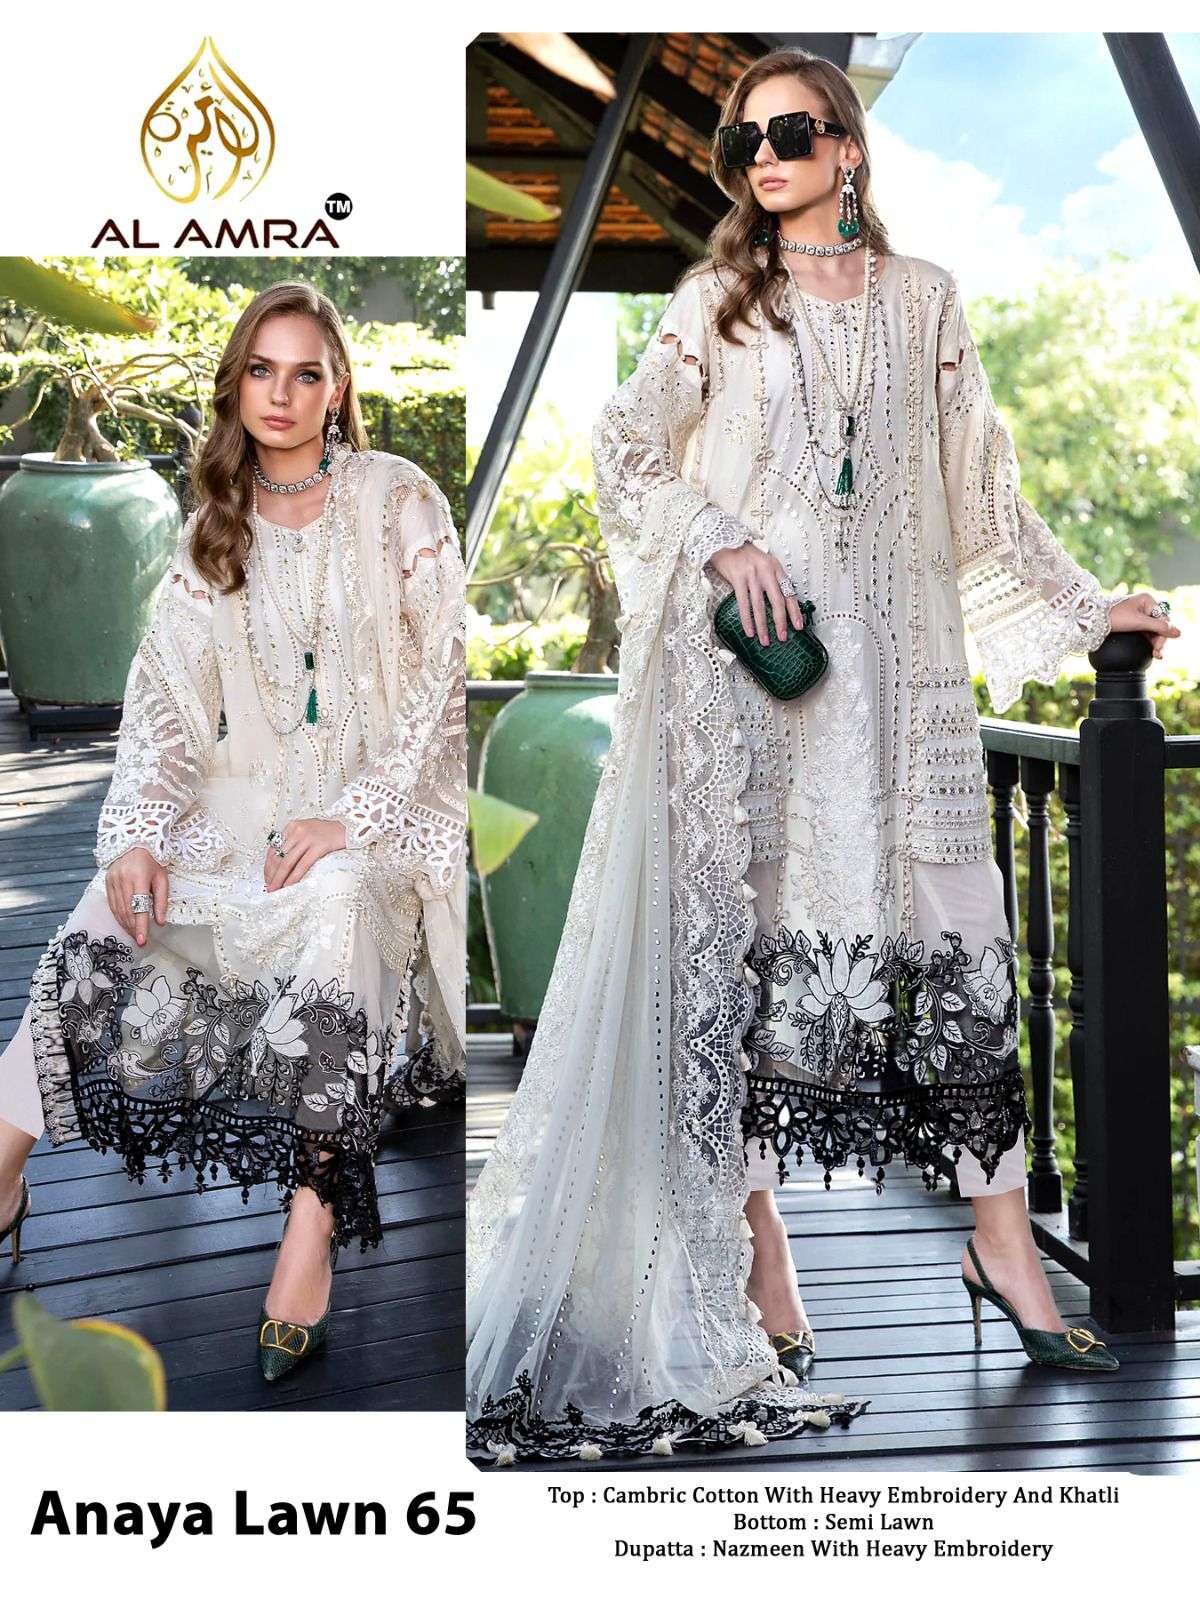 ANAYA LAWN 65 NX BY AL AMRA CAMBRIC COTTON EMBROIDERY PAKISTANI DRESS